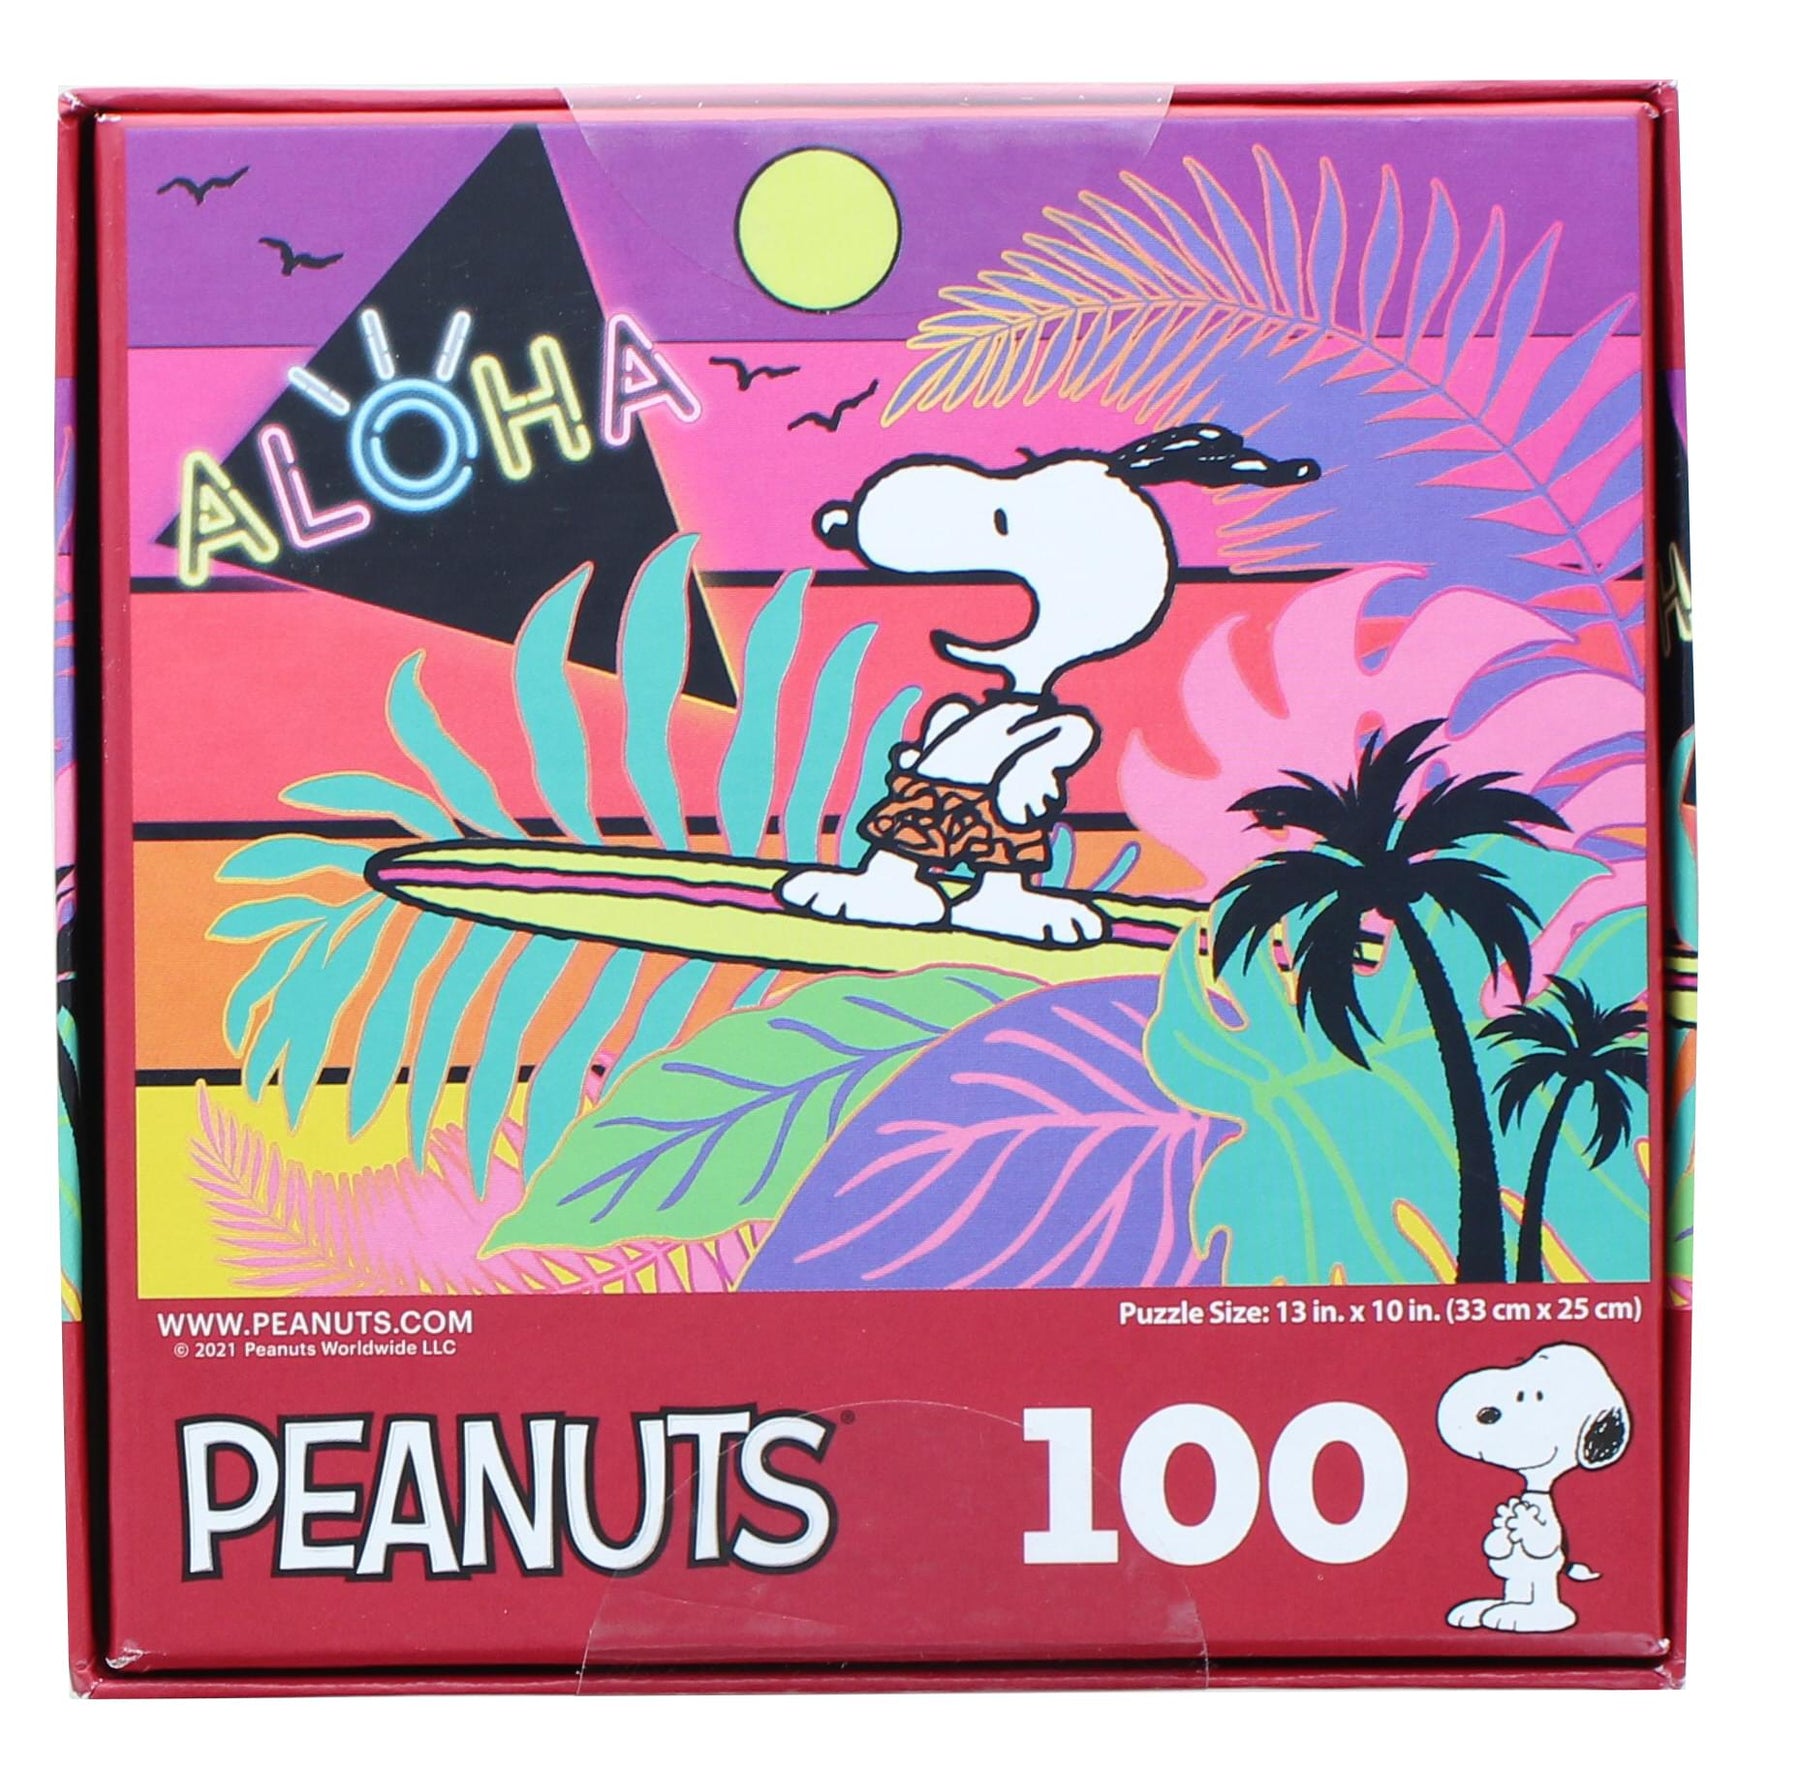 Peanuts 100 Piece Kids Jigsaw Puzzle | Snoopy Aloha